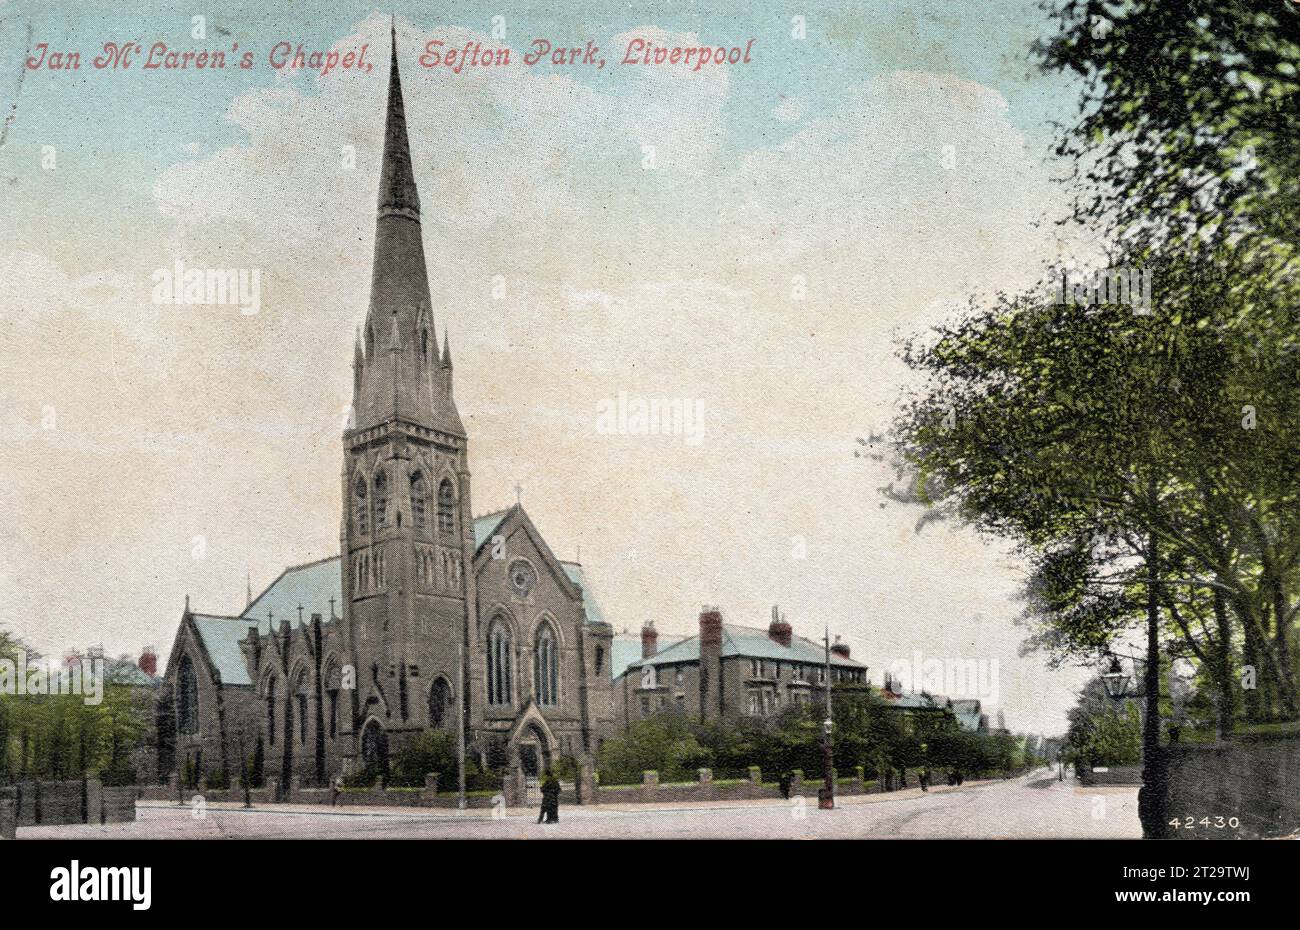 Sefton Park Presbyterian Church, Liverpool, Merseyside. Die Kirche wurde 1879 vom örtlichen Architekten David Walker entworfen und 1980 abgerissen. Die Kirche stand gegenüber dem Croxteth Gate, dem nördlichen Eingang zum Sefton Park. Der erste Amtsinhaber war der Reverend John Watson (1850–1907), vielleicht auch bekannt als der Autor Ian Maclaren. Colourised Photography, ca. 1900; Stockfoto